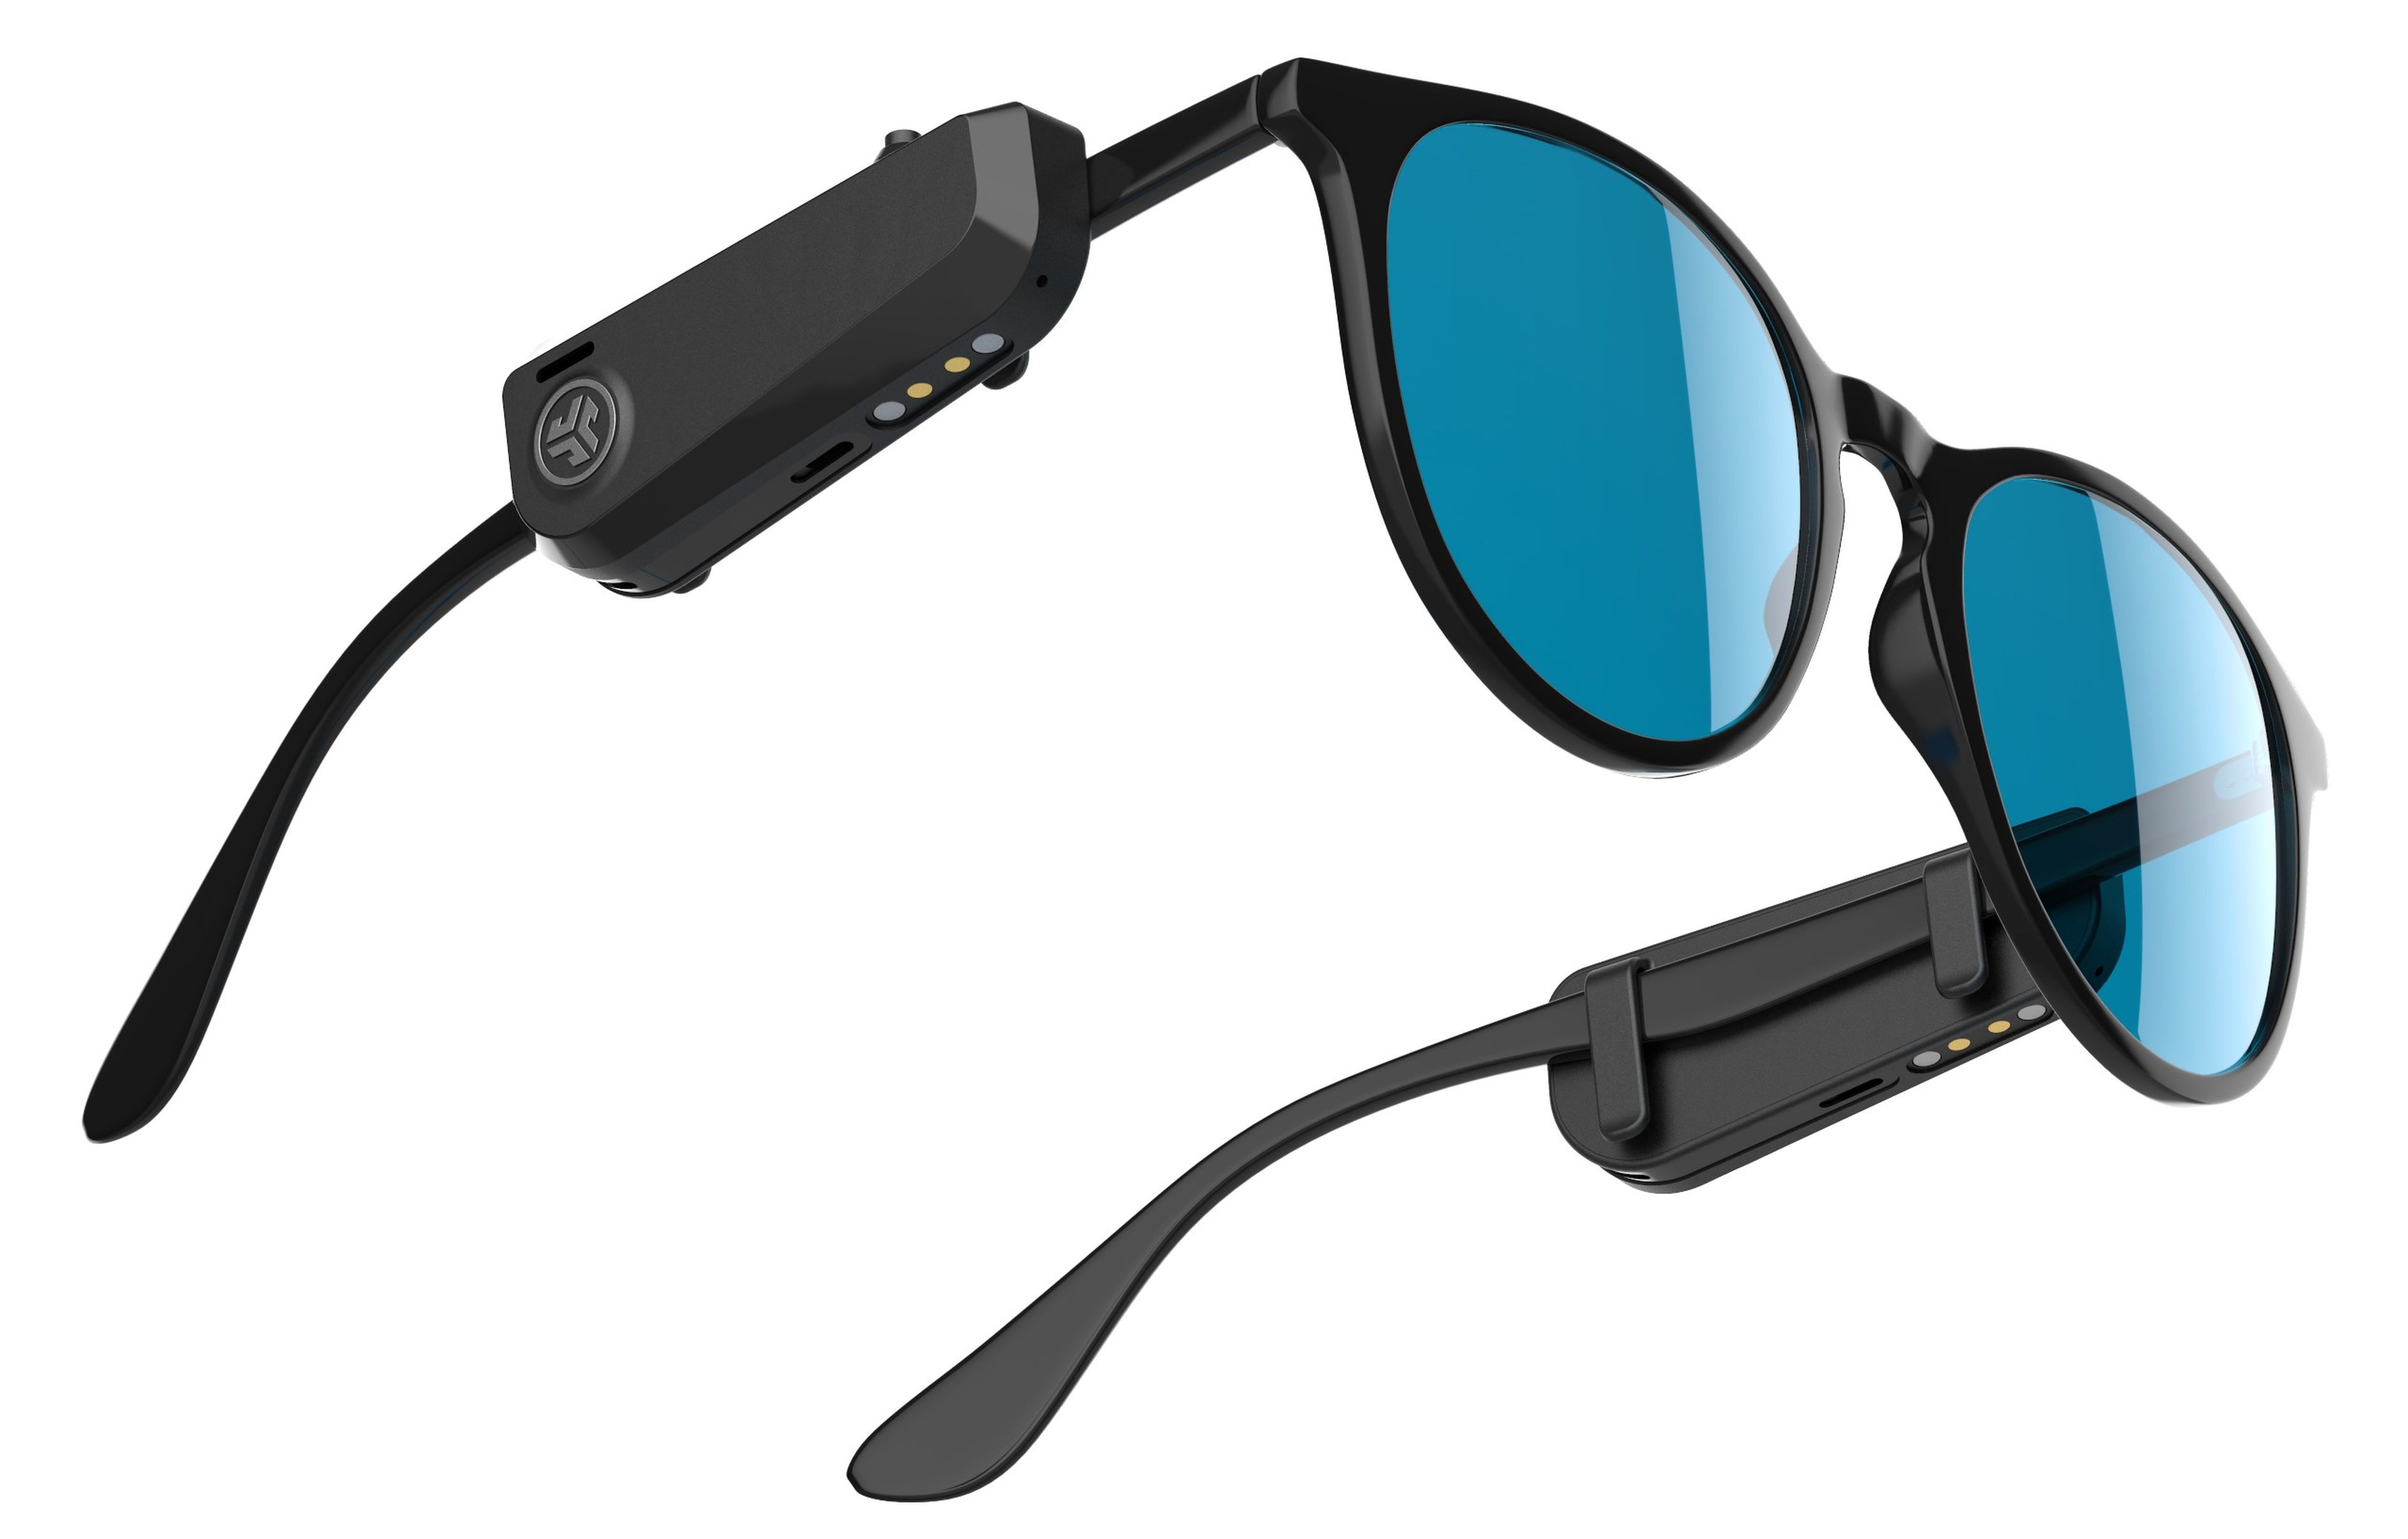 Este accesorio convierte unas gafas convencionales en gafas con altavoces